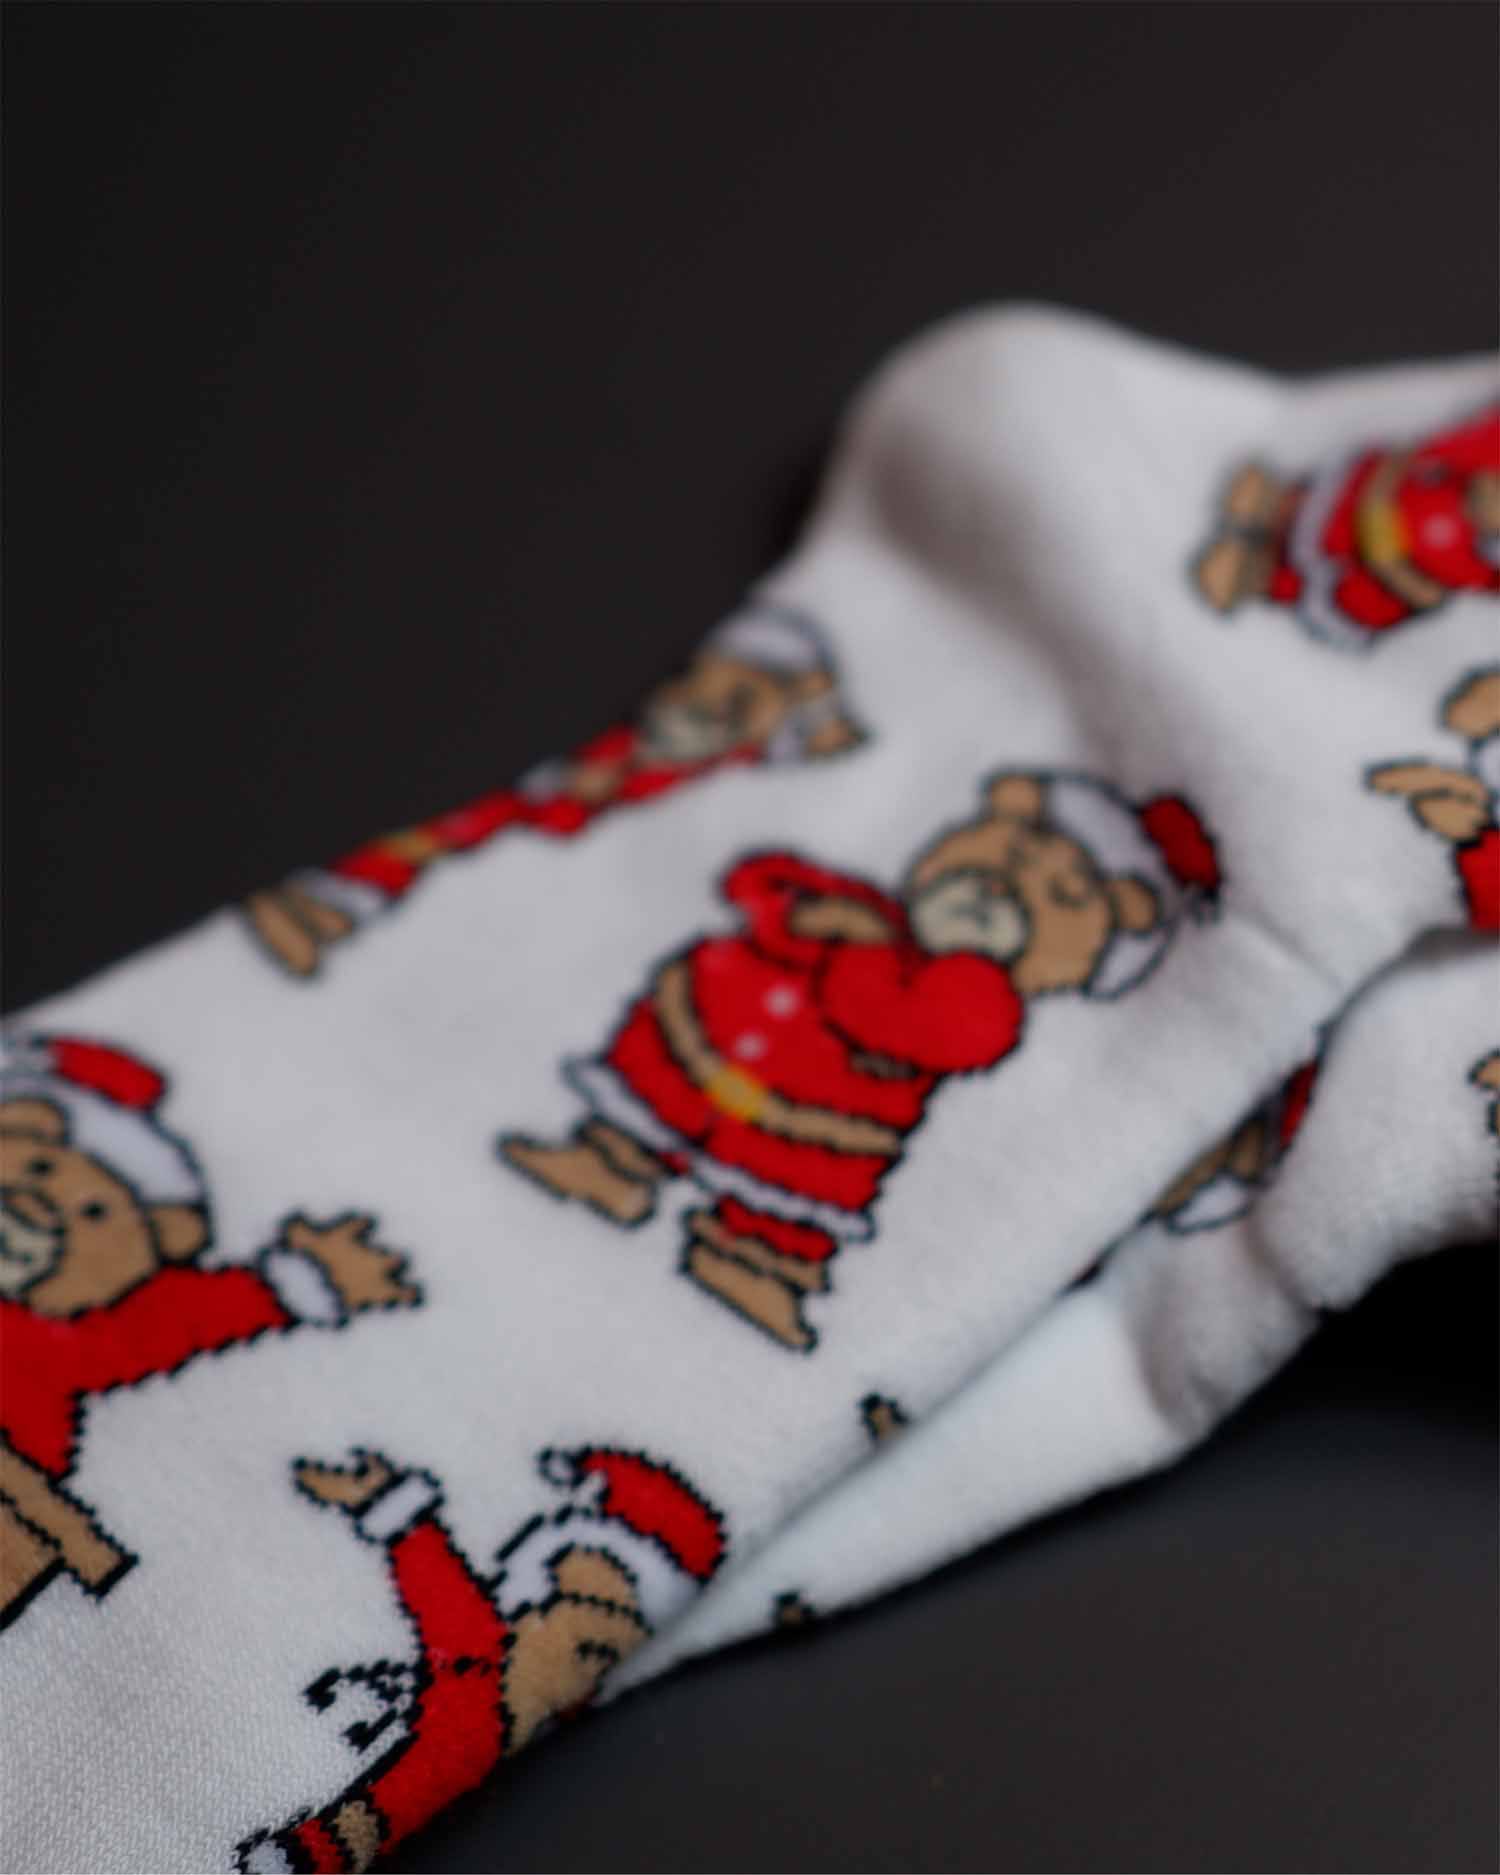 Weihnachts-Flausch-Socken [LIMITED] - Animus Medicus GmbH